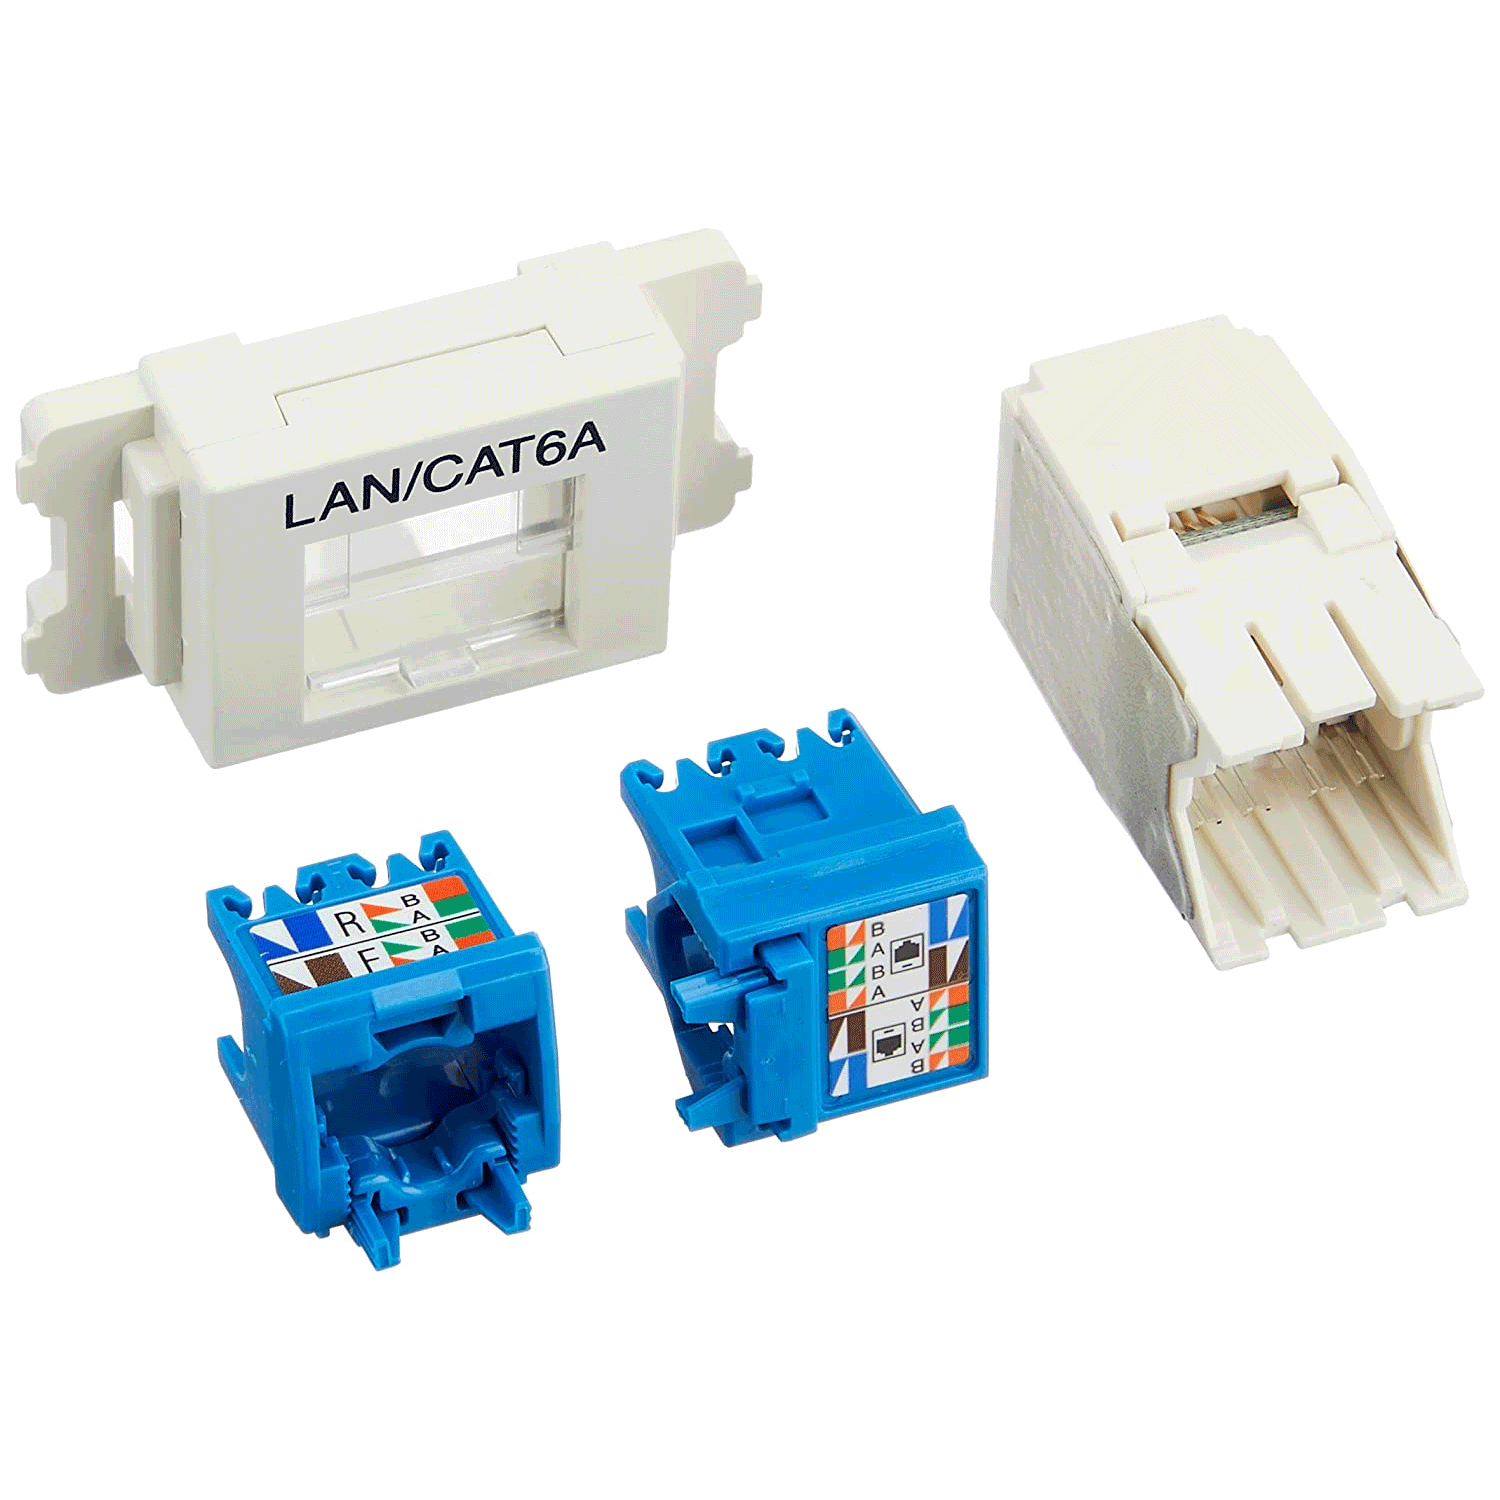 Cat6A LANコンセント－10Gbps対応のパンドウイット（Panduit）社製LANコンセント（JISプレート用ジャック キット）について使用方法、注意点などを紹介します